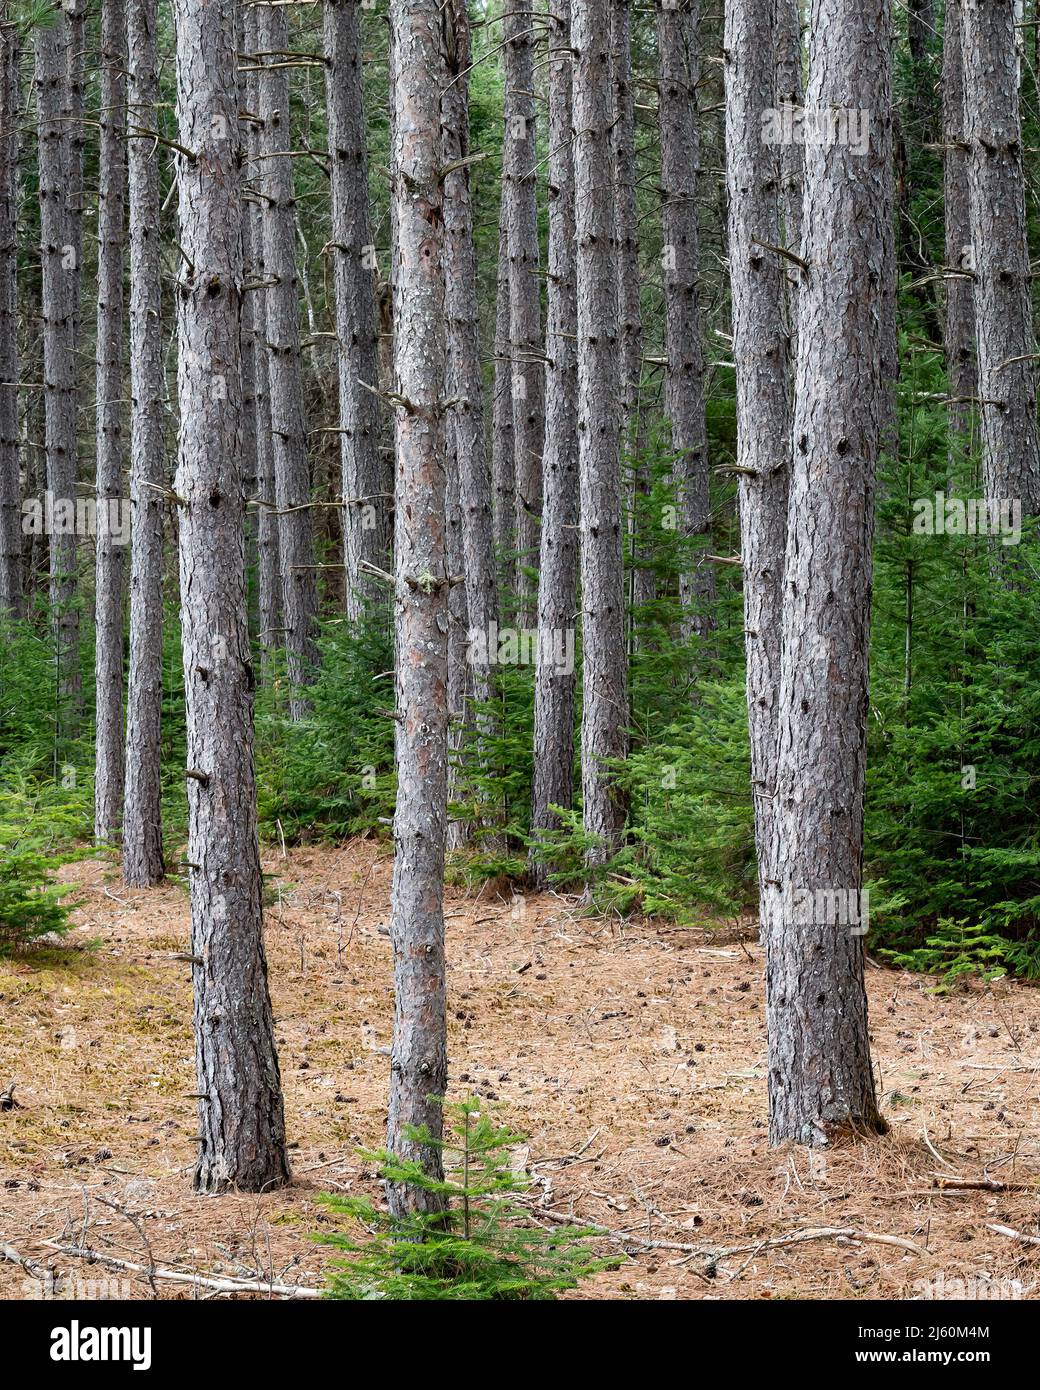 Una plantación de pinos en la granja del árbol del speculator en las montañas Adirondack, NY a principios de la primavera Foto de stock